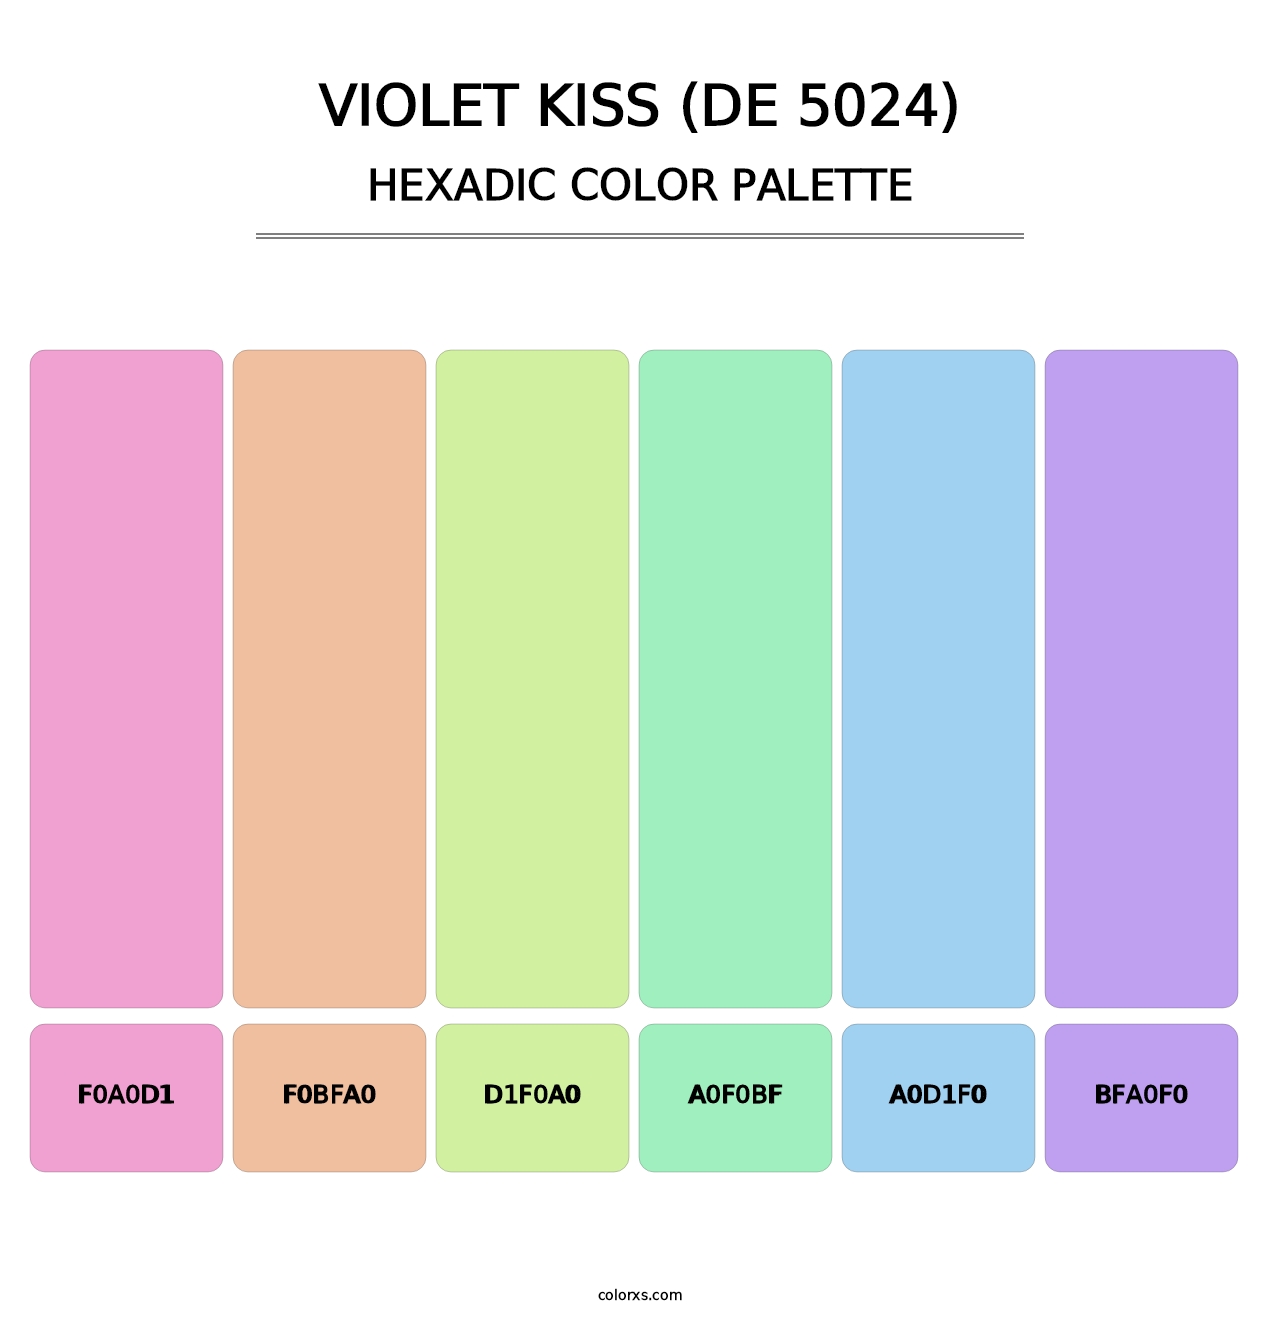 Violet Kiss (DE 5024) - Hexadic Color Palette